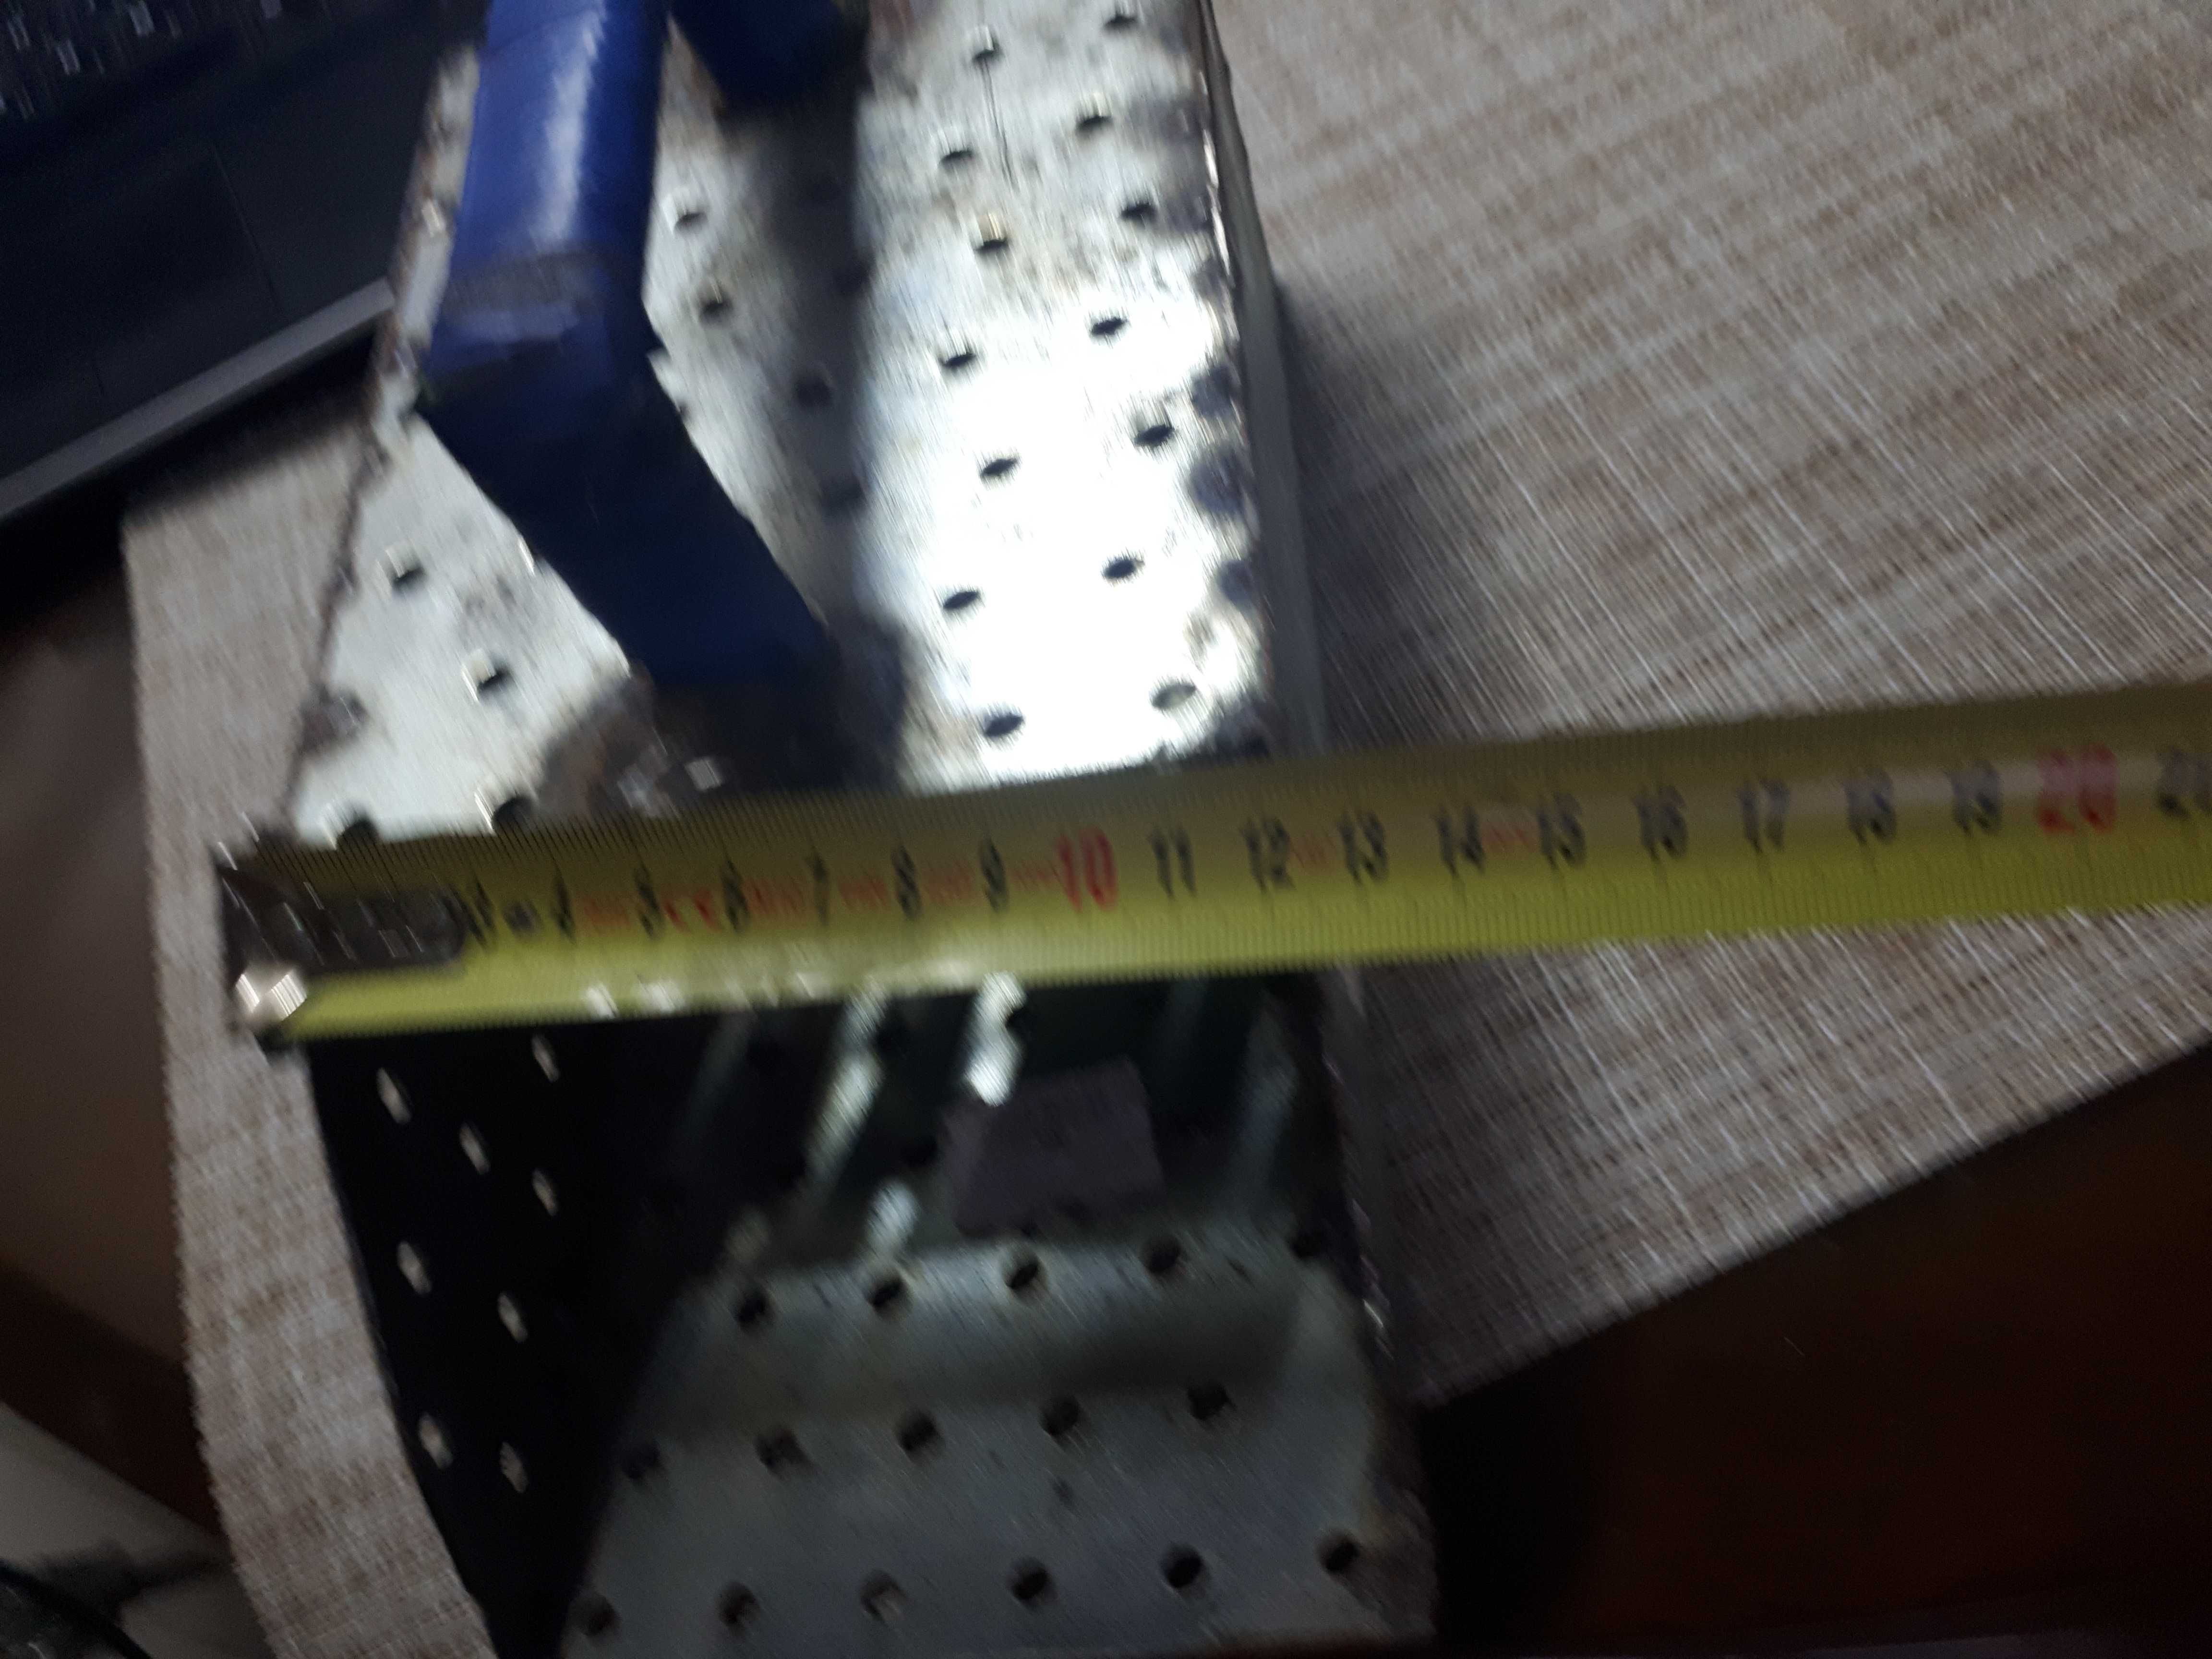 Пляжный совок (скуп) 240×125×80 мм для поиска с металлоискателем